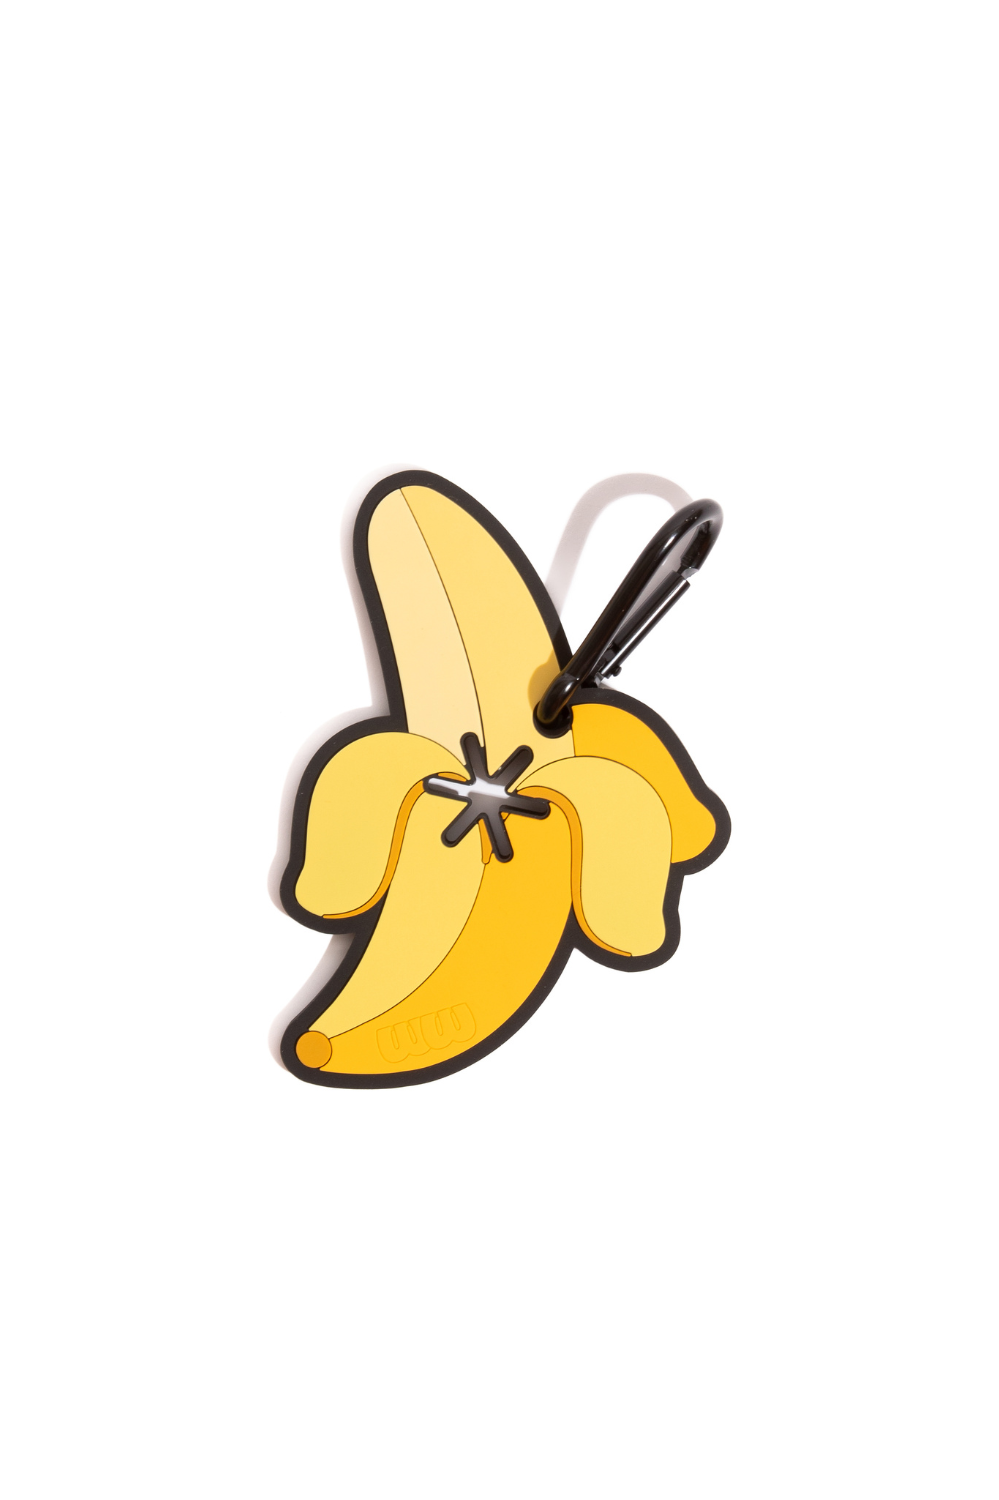 Banana Poopy Loop